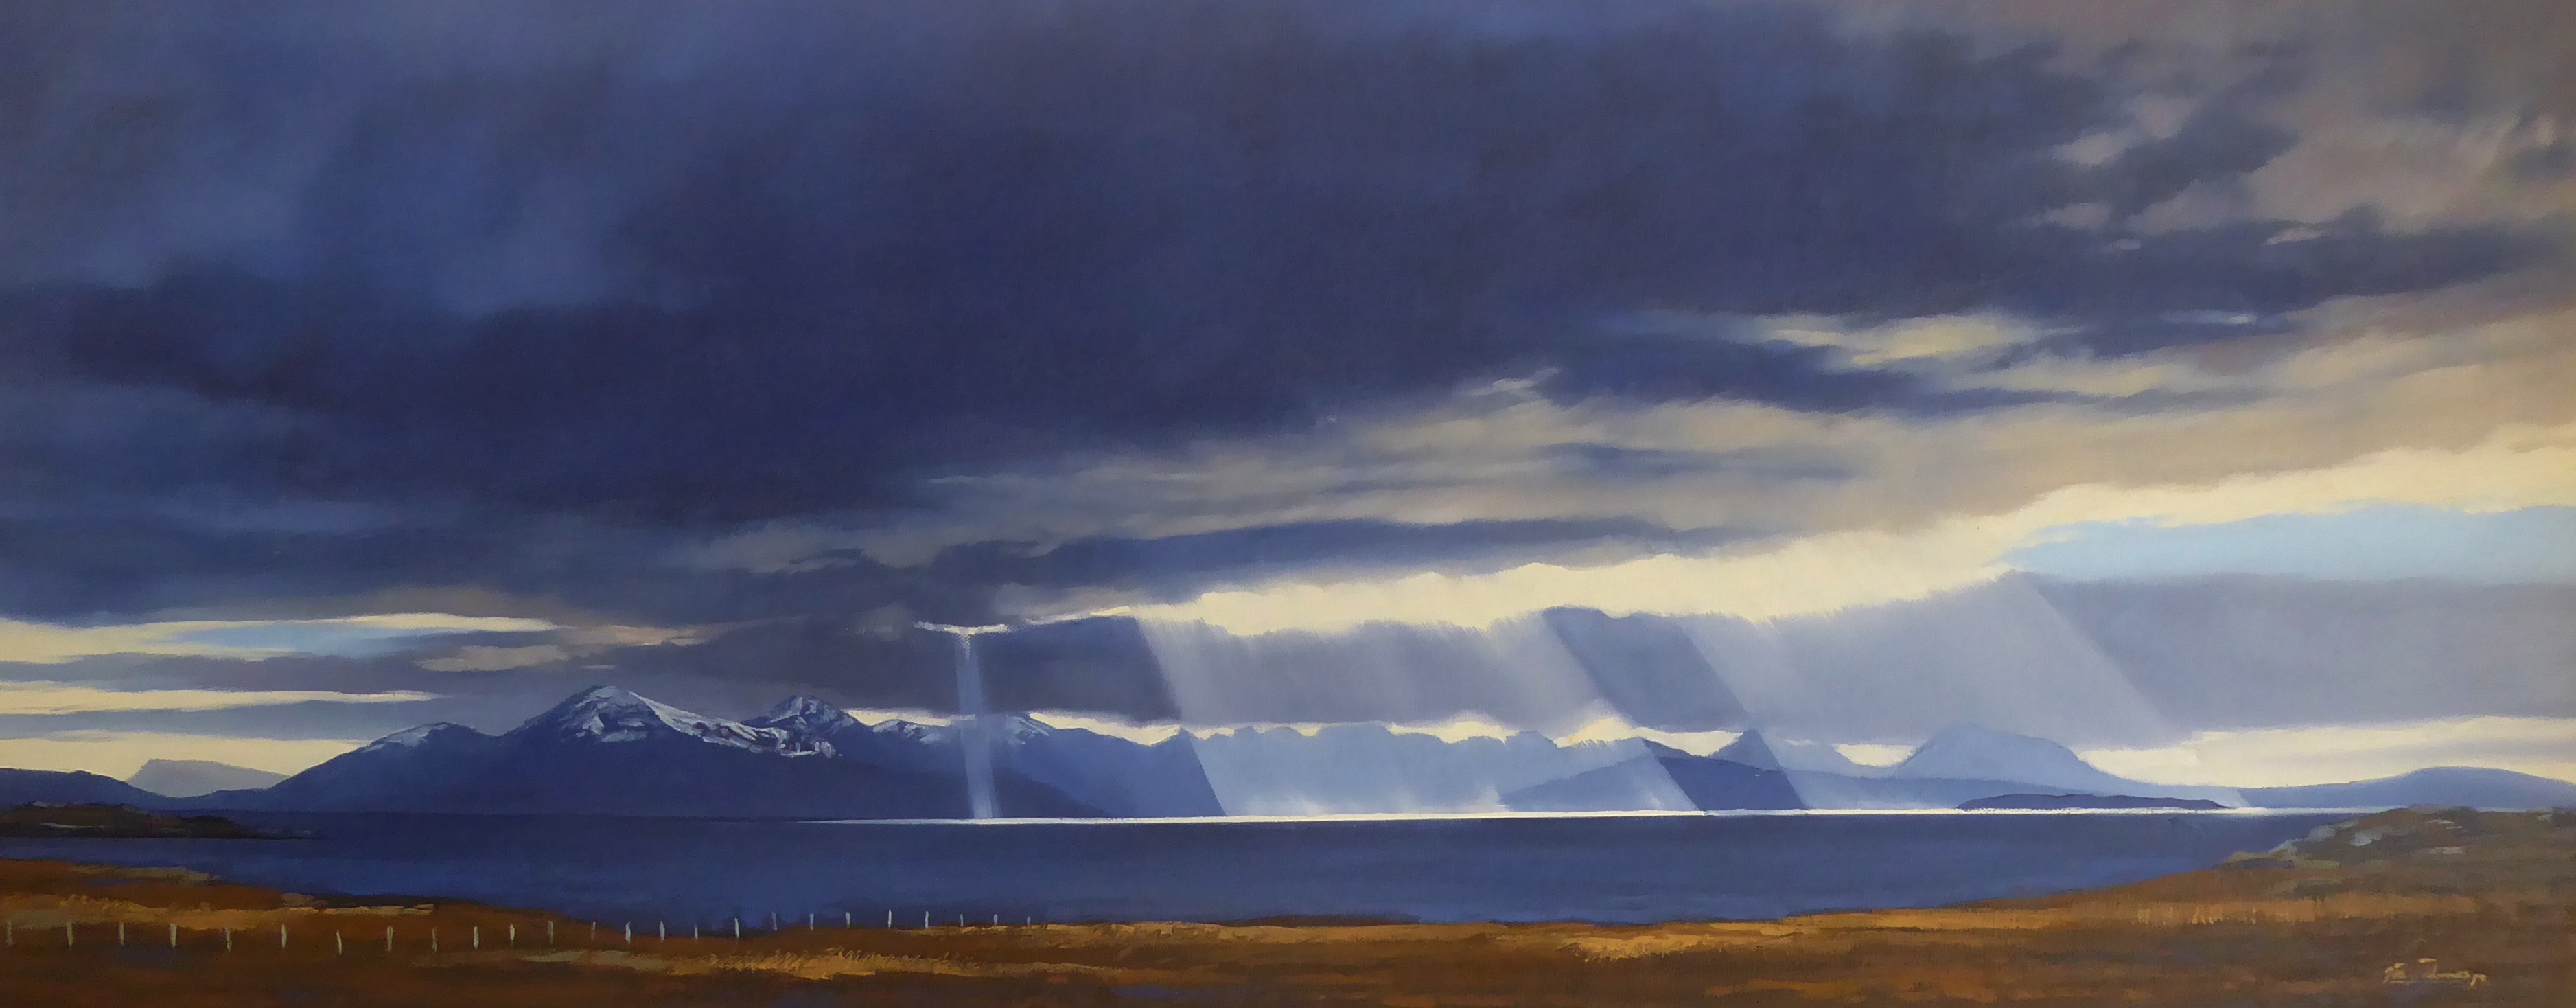 'Blue Skye' by artist George Noakes